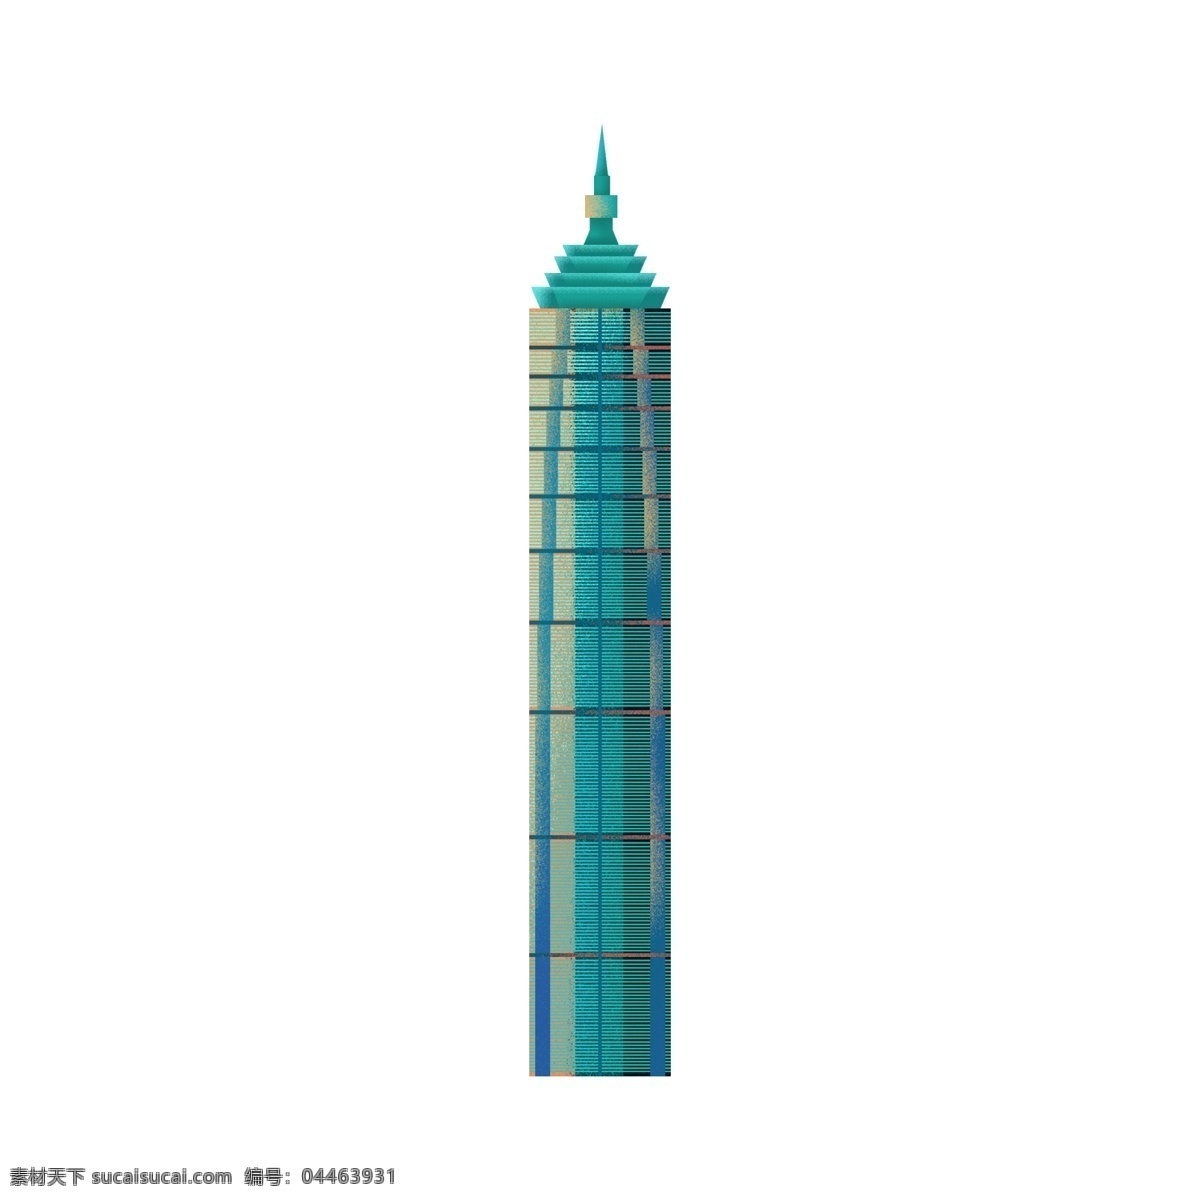 蓝色 卡通 彩色 高楼大厦 装饰元素 插画元素 彩色高楼大厦 免扣素材 简约风